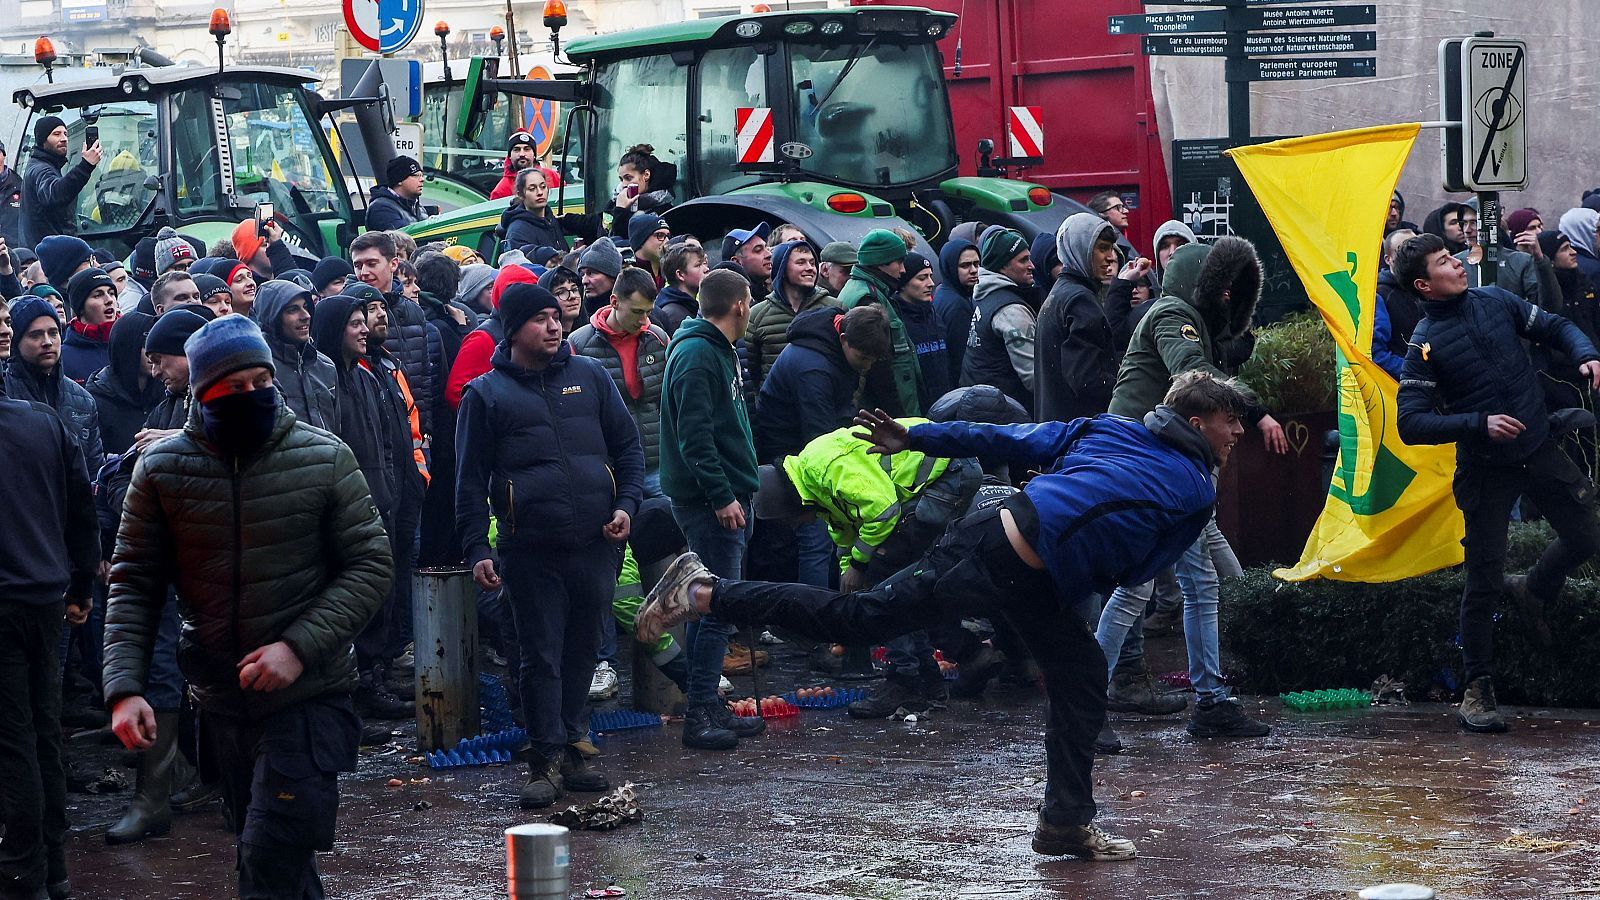 Las protestas de los agricultores europeos, ¿qué hay de nuevo?